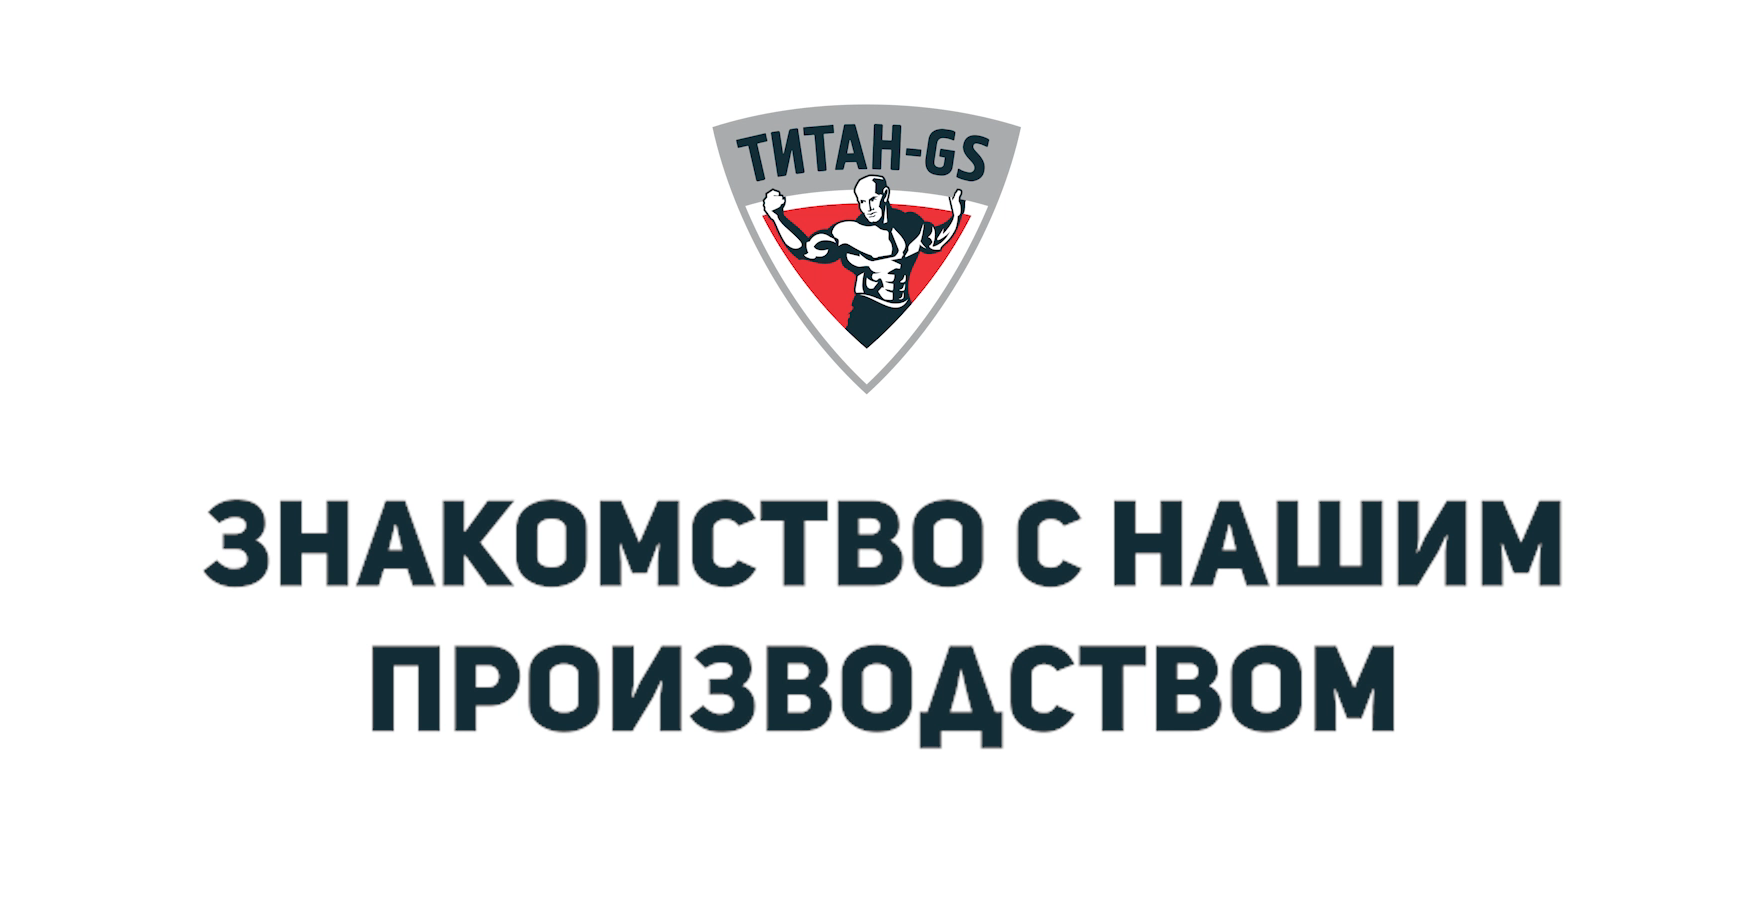 Титан гс сайт. Титан ГС. Логотип Титан GS. Титан-ГС Ярославль. Подсистема Титан.